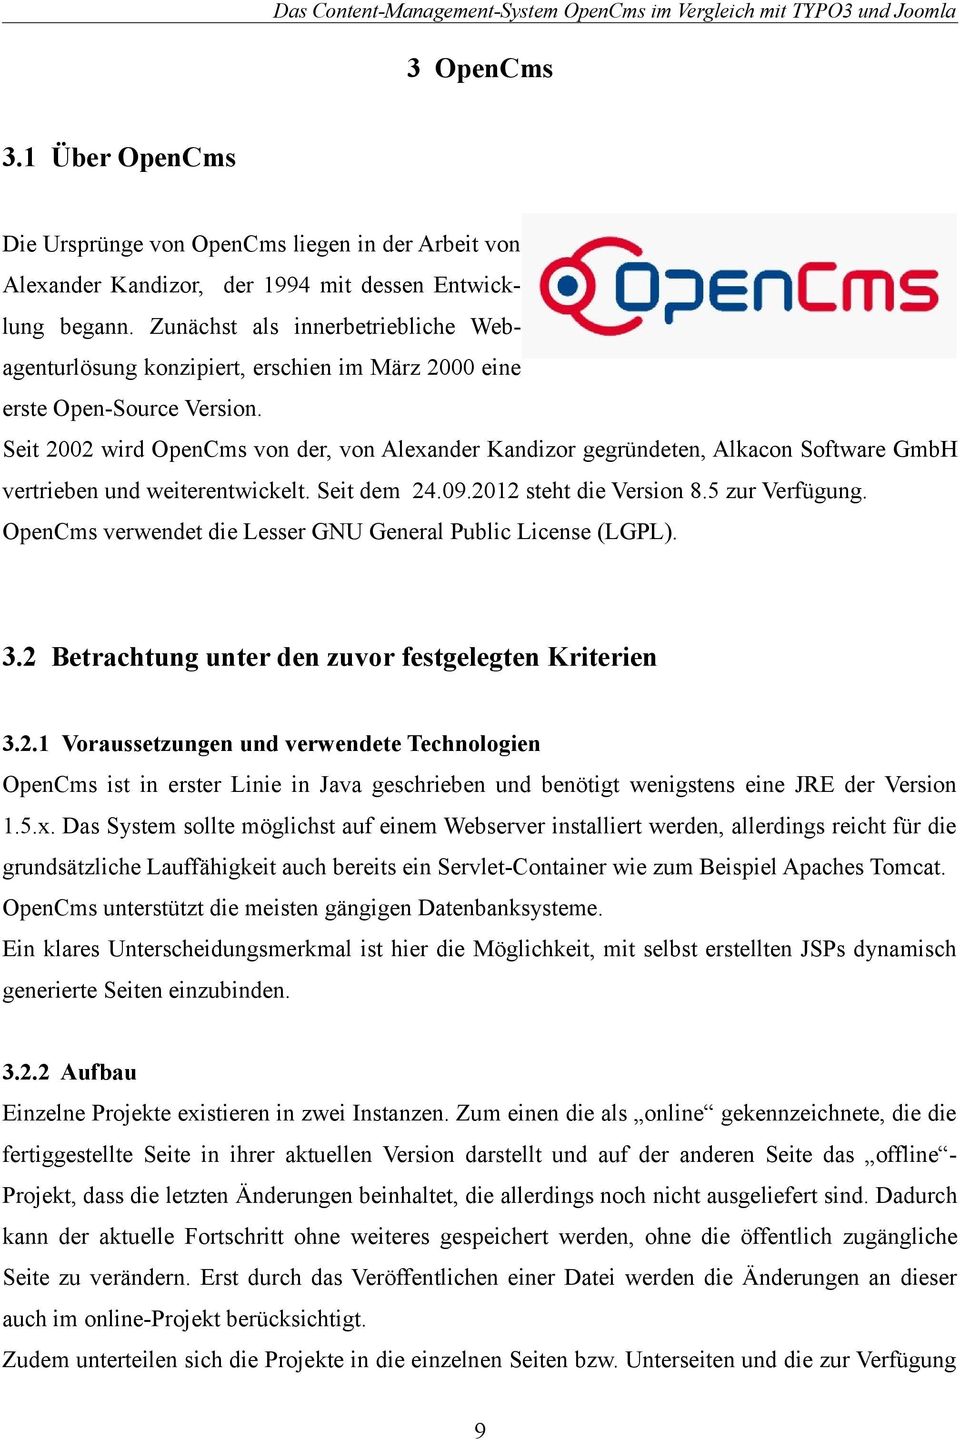 Seit 2002 wird OpenCms von der, von Alexander Kandizor gegründeten, Alkacon Software GmbH vertrieben und weiterentwickelt. Seit dem 24.09.2012 steht die Version 8.5 zur Verfügung.